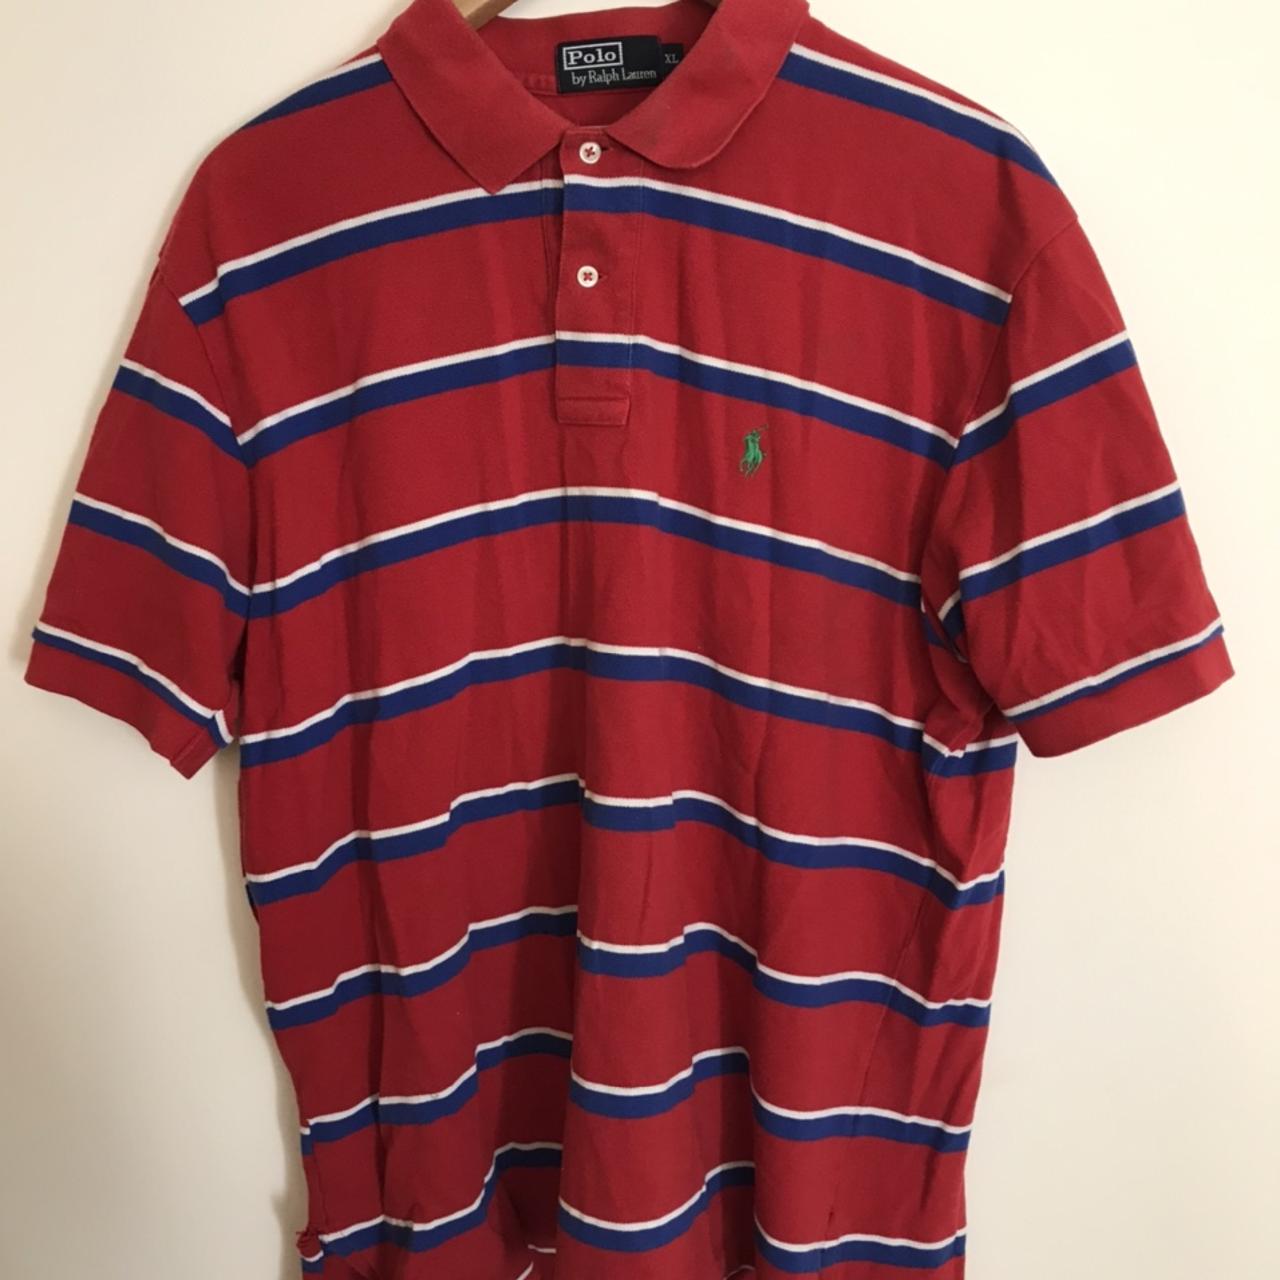 Ralph Lauren polo shirt size xl in good condition - Depop